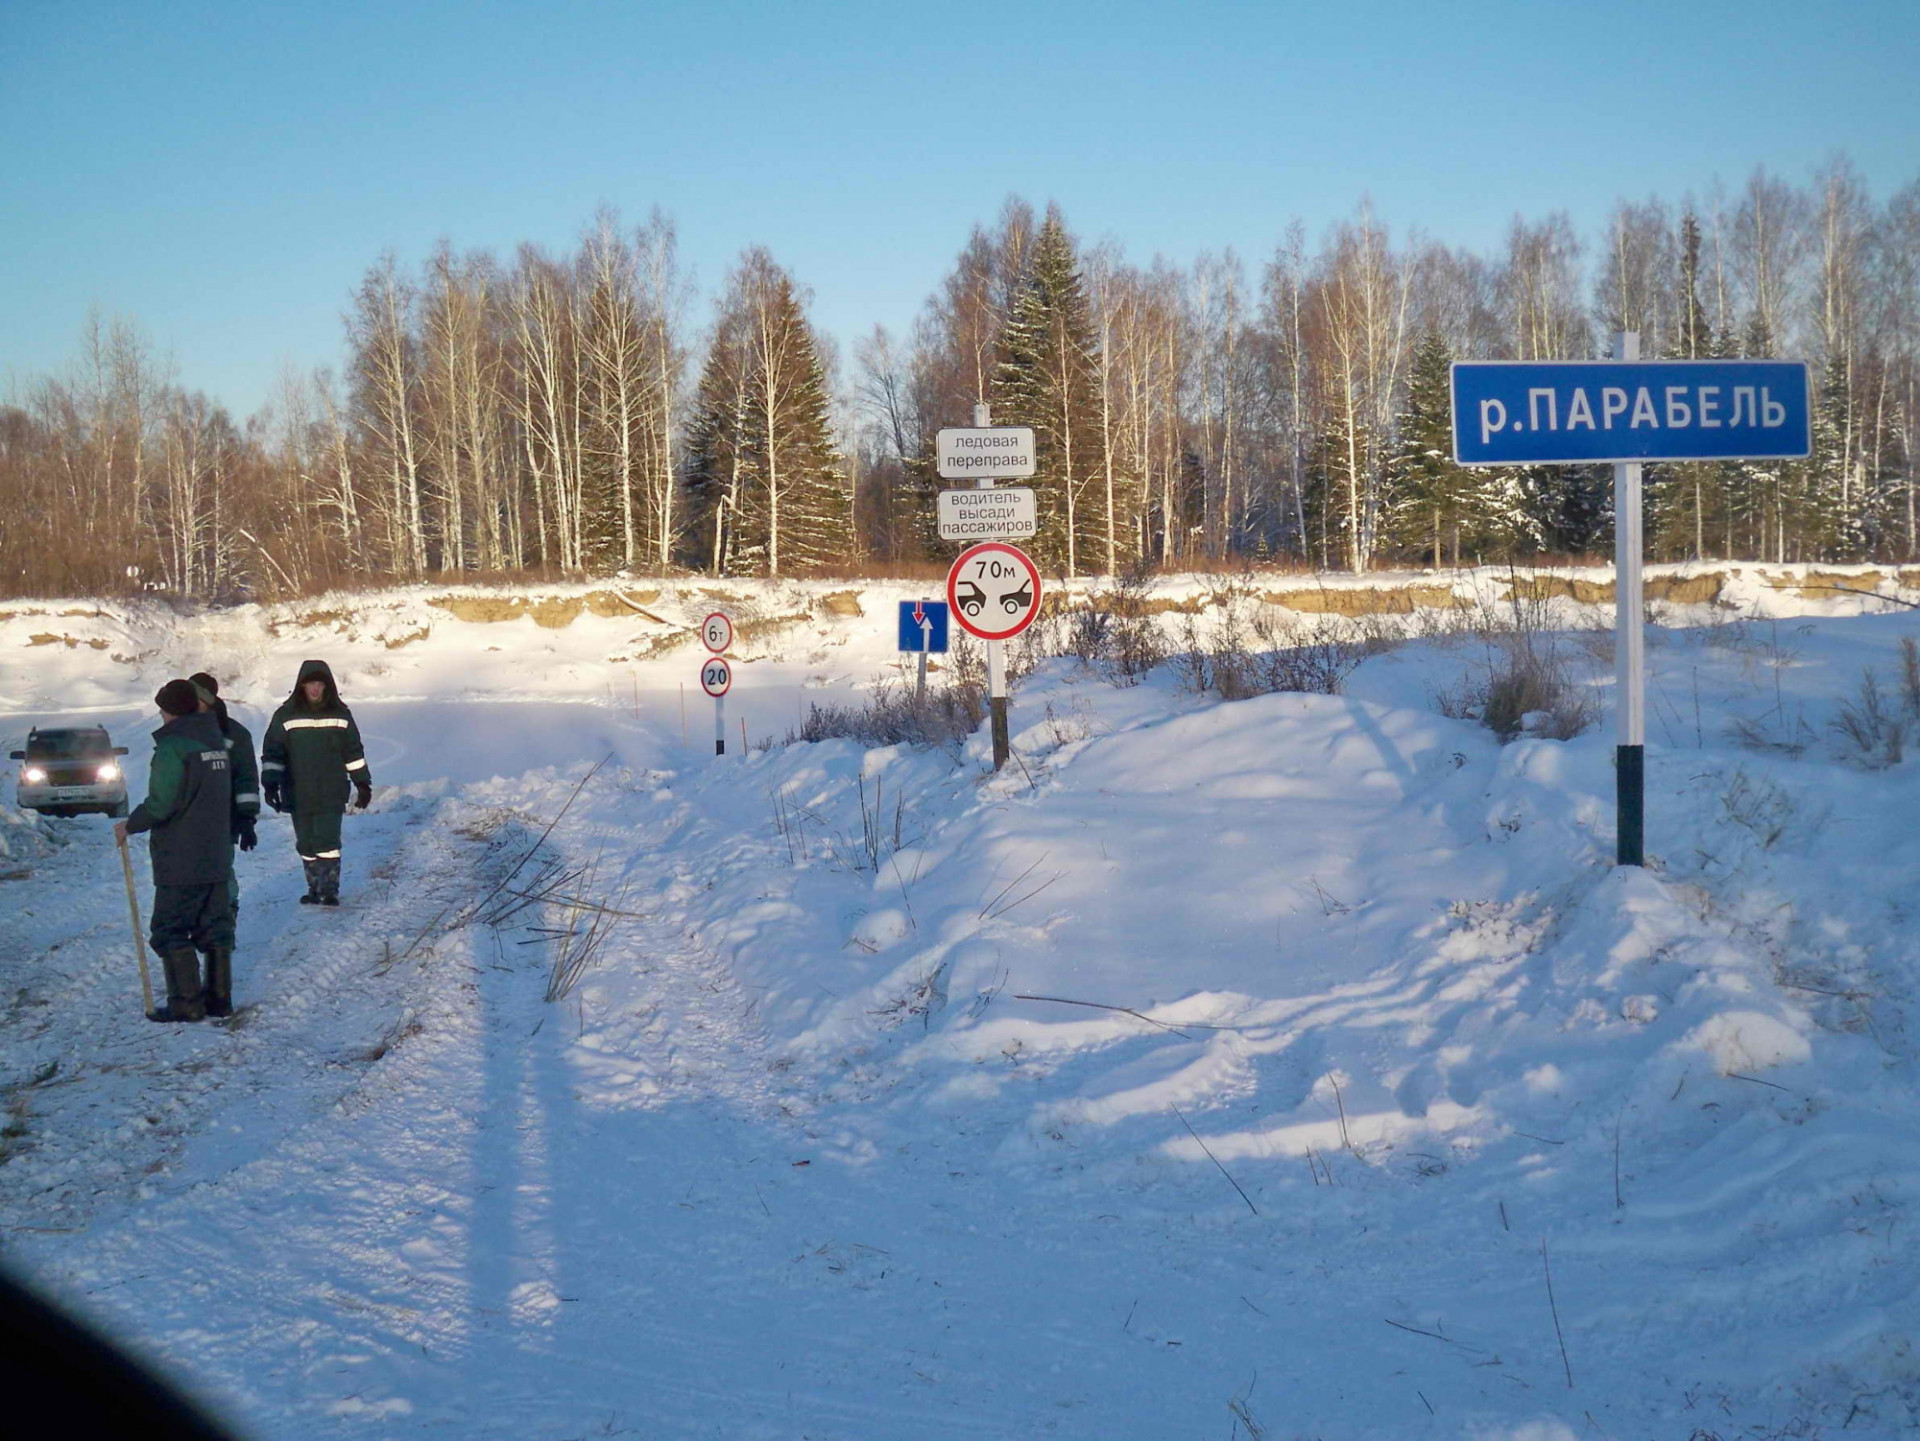 В связи с потеплением в Парабельском районе снижена максимальная транспортная нагрузка на ледовых переправах. Данные предоставлены сегодня 26 марта.